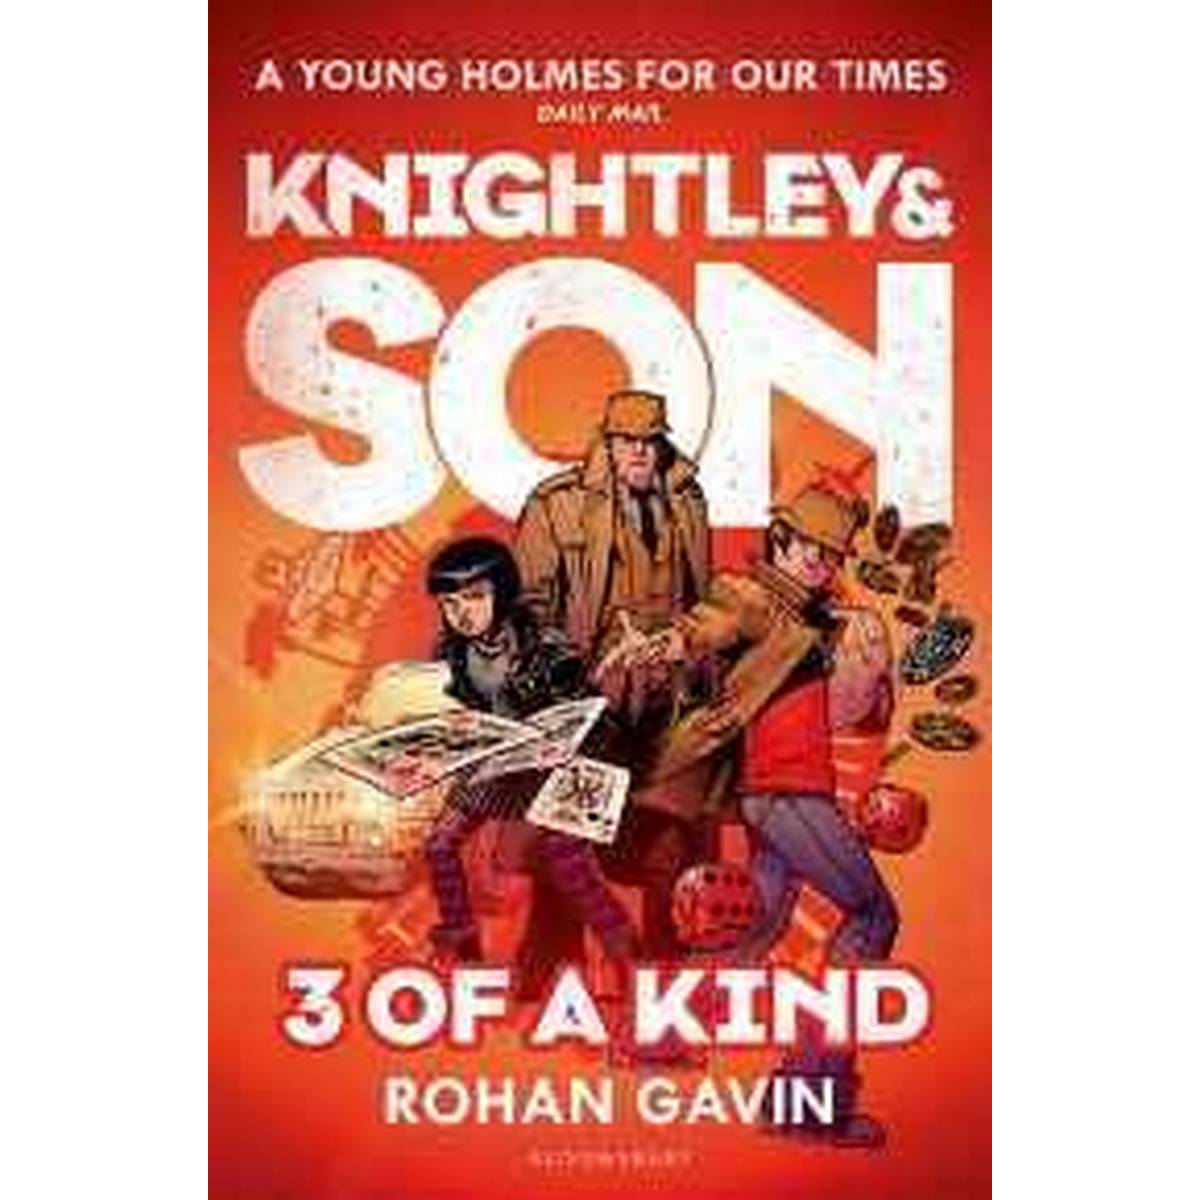 3 of a Kind (Knightley & Son)